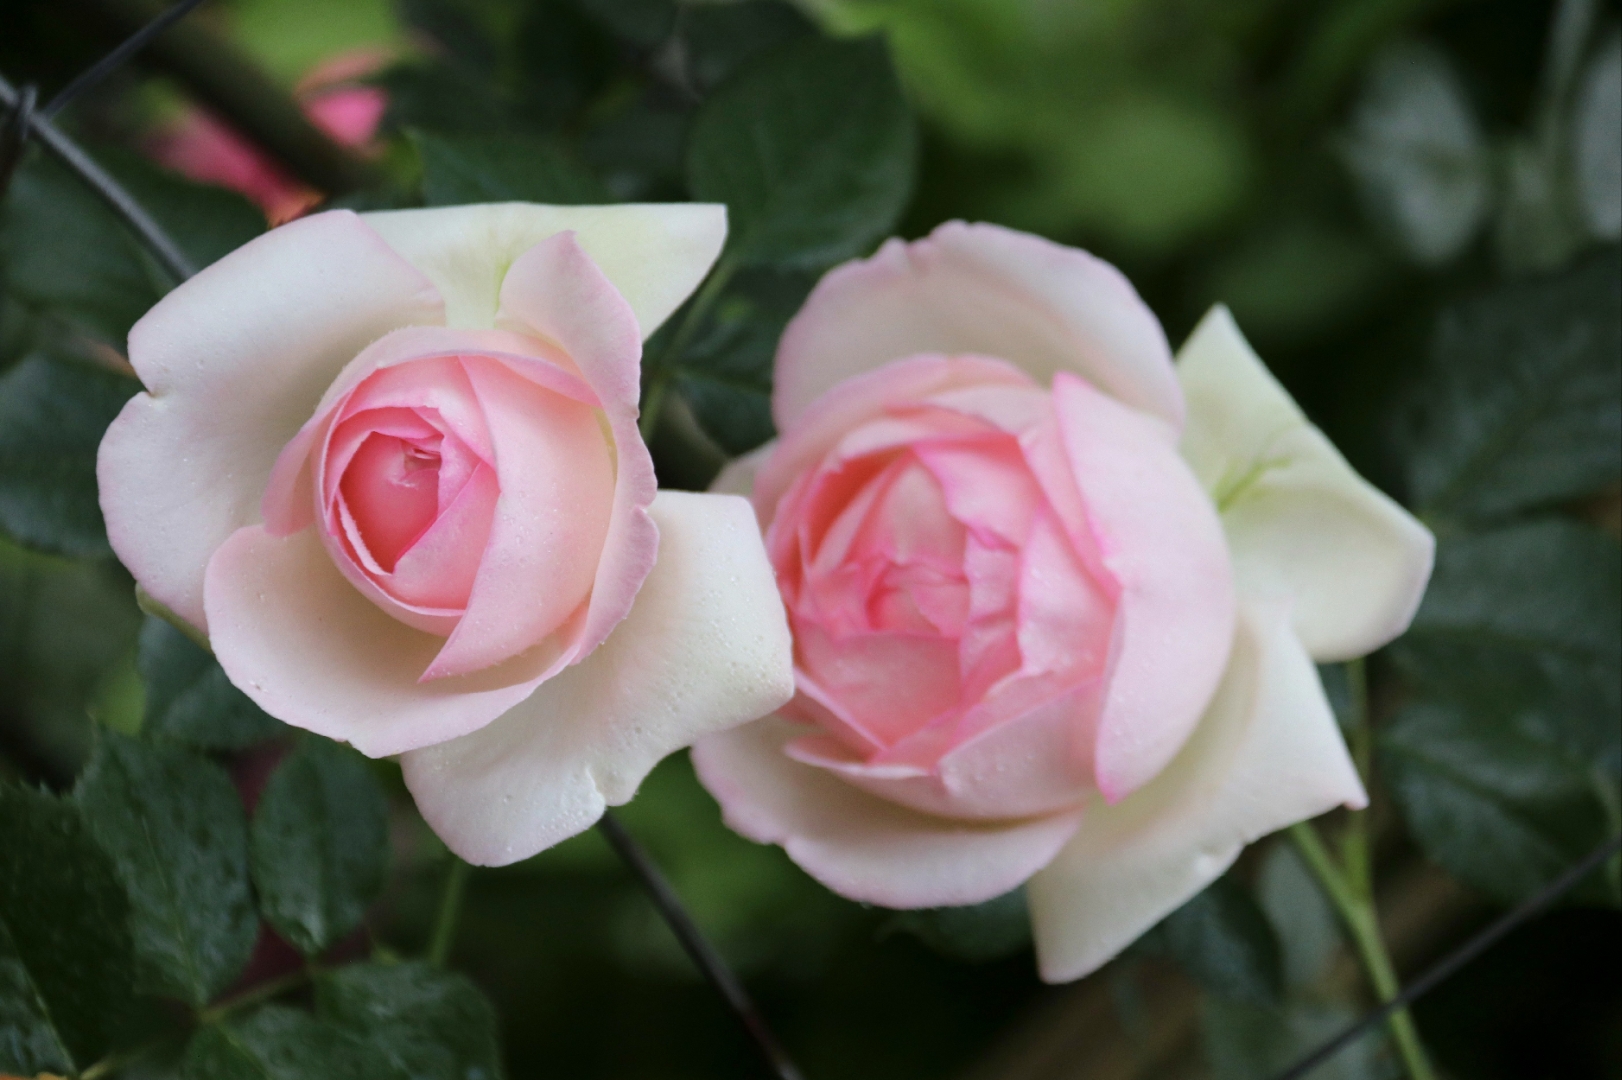 一种蔷薇花,四周白色的叶片镶嵌着粉色的花办,造型美观别致,向一个